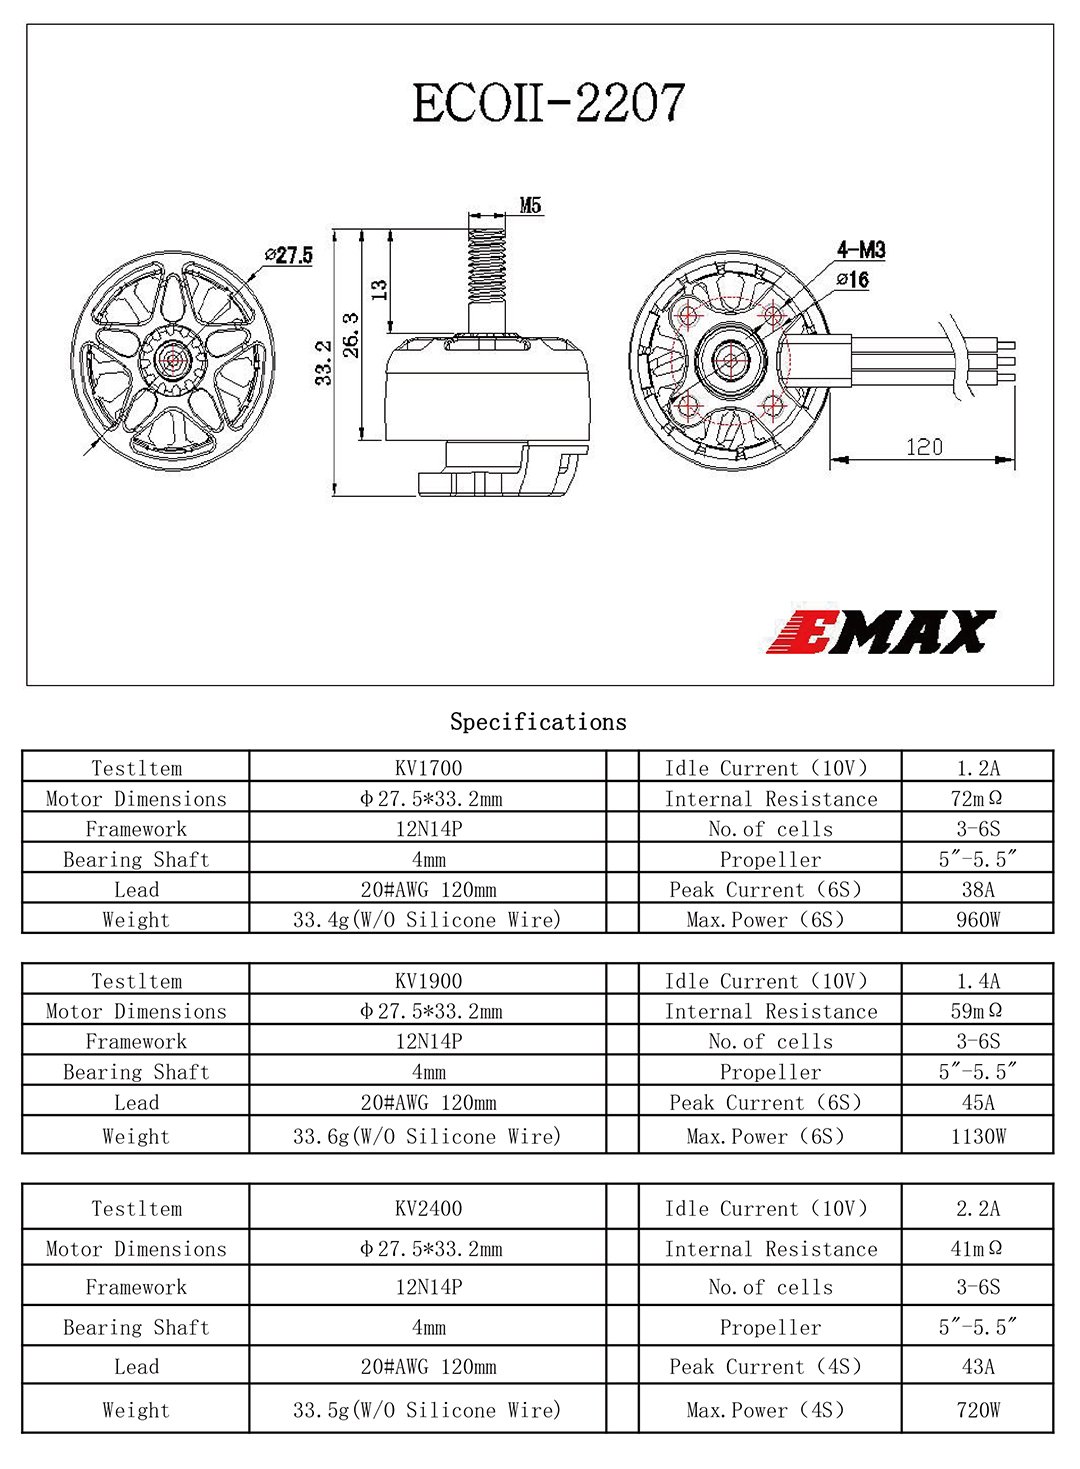 EMAX ECO II Series 2306 FPV Drone Motor - 1700Kv/1900Kv/2400Kv 16